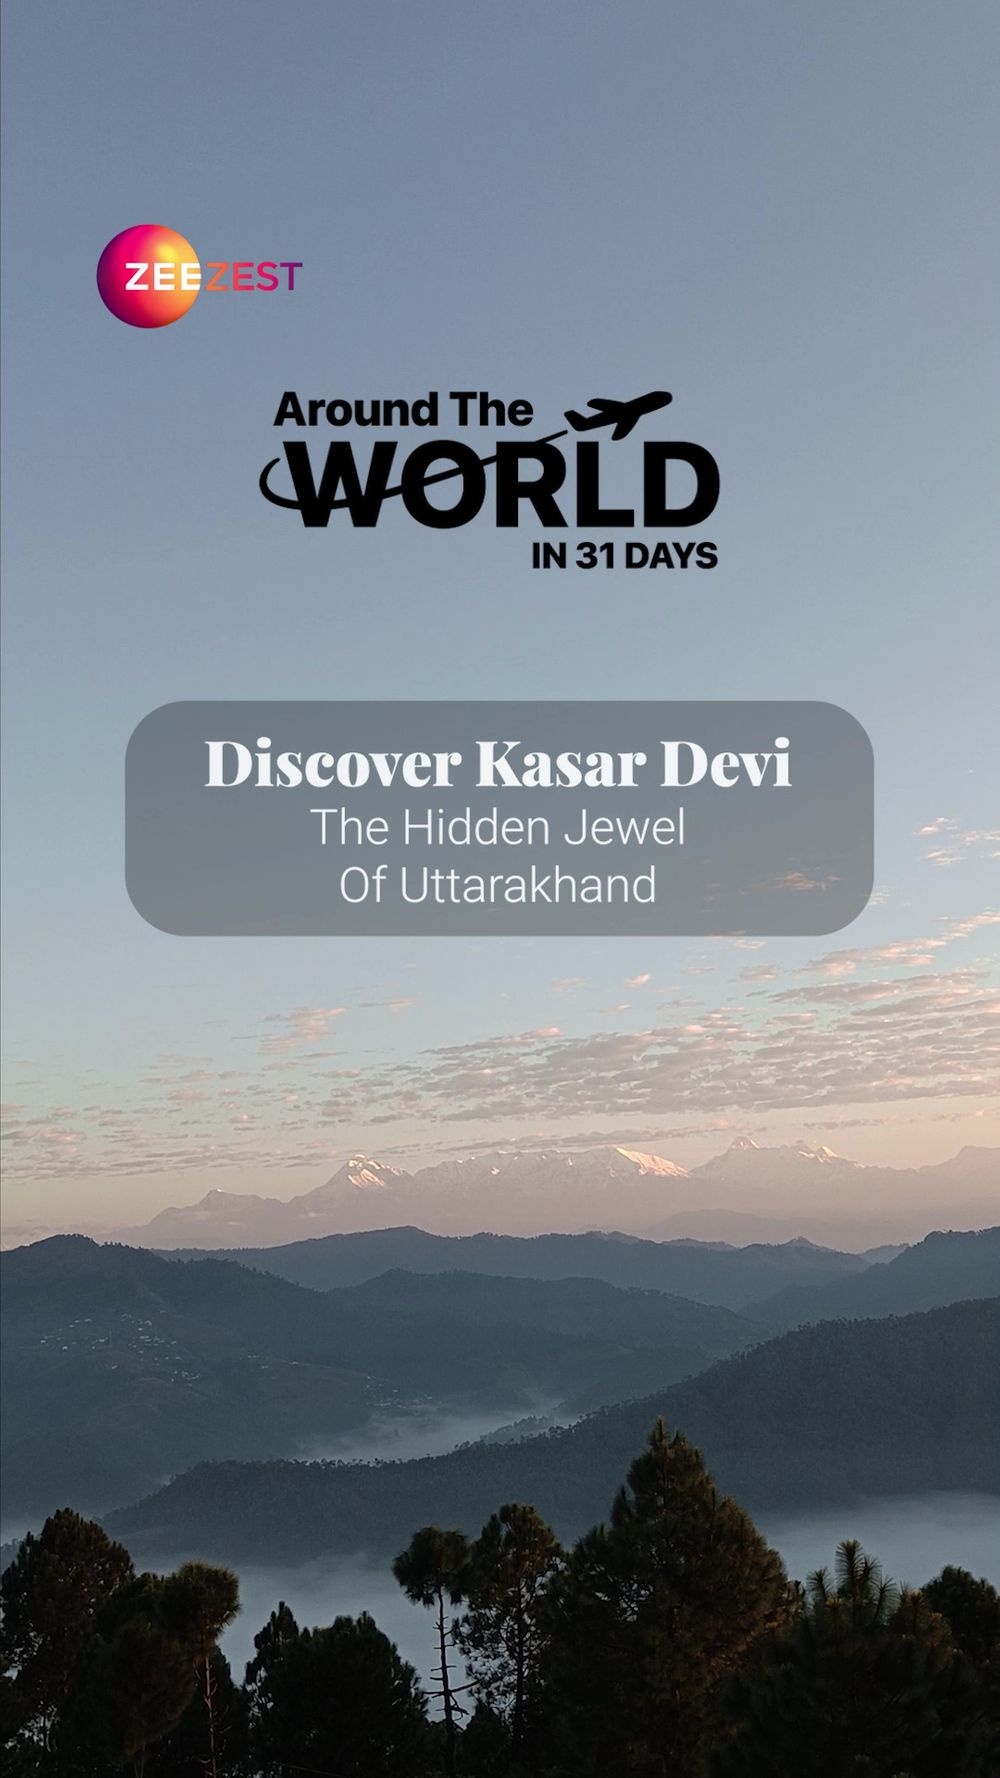 Around the World In 31 Days, Travel, Zee Zest, Kasar Devi, Uttarakhand